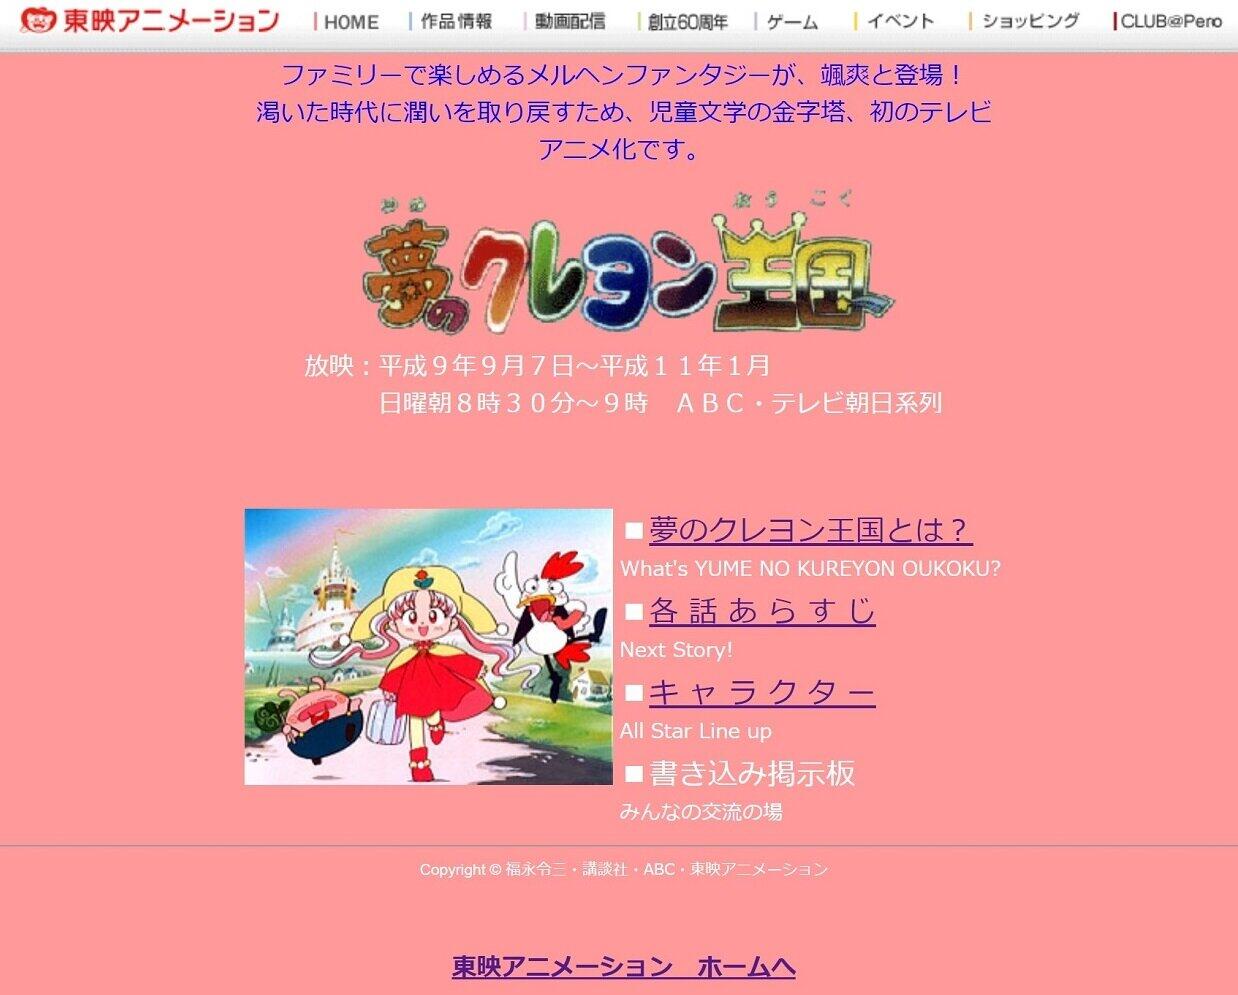 1990年代放送「夢のクレヨン王国」サイト健在　懐かしいアニメ公式サイトまだある